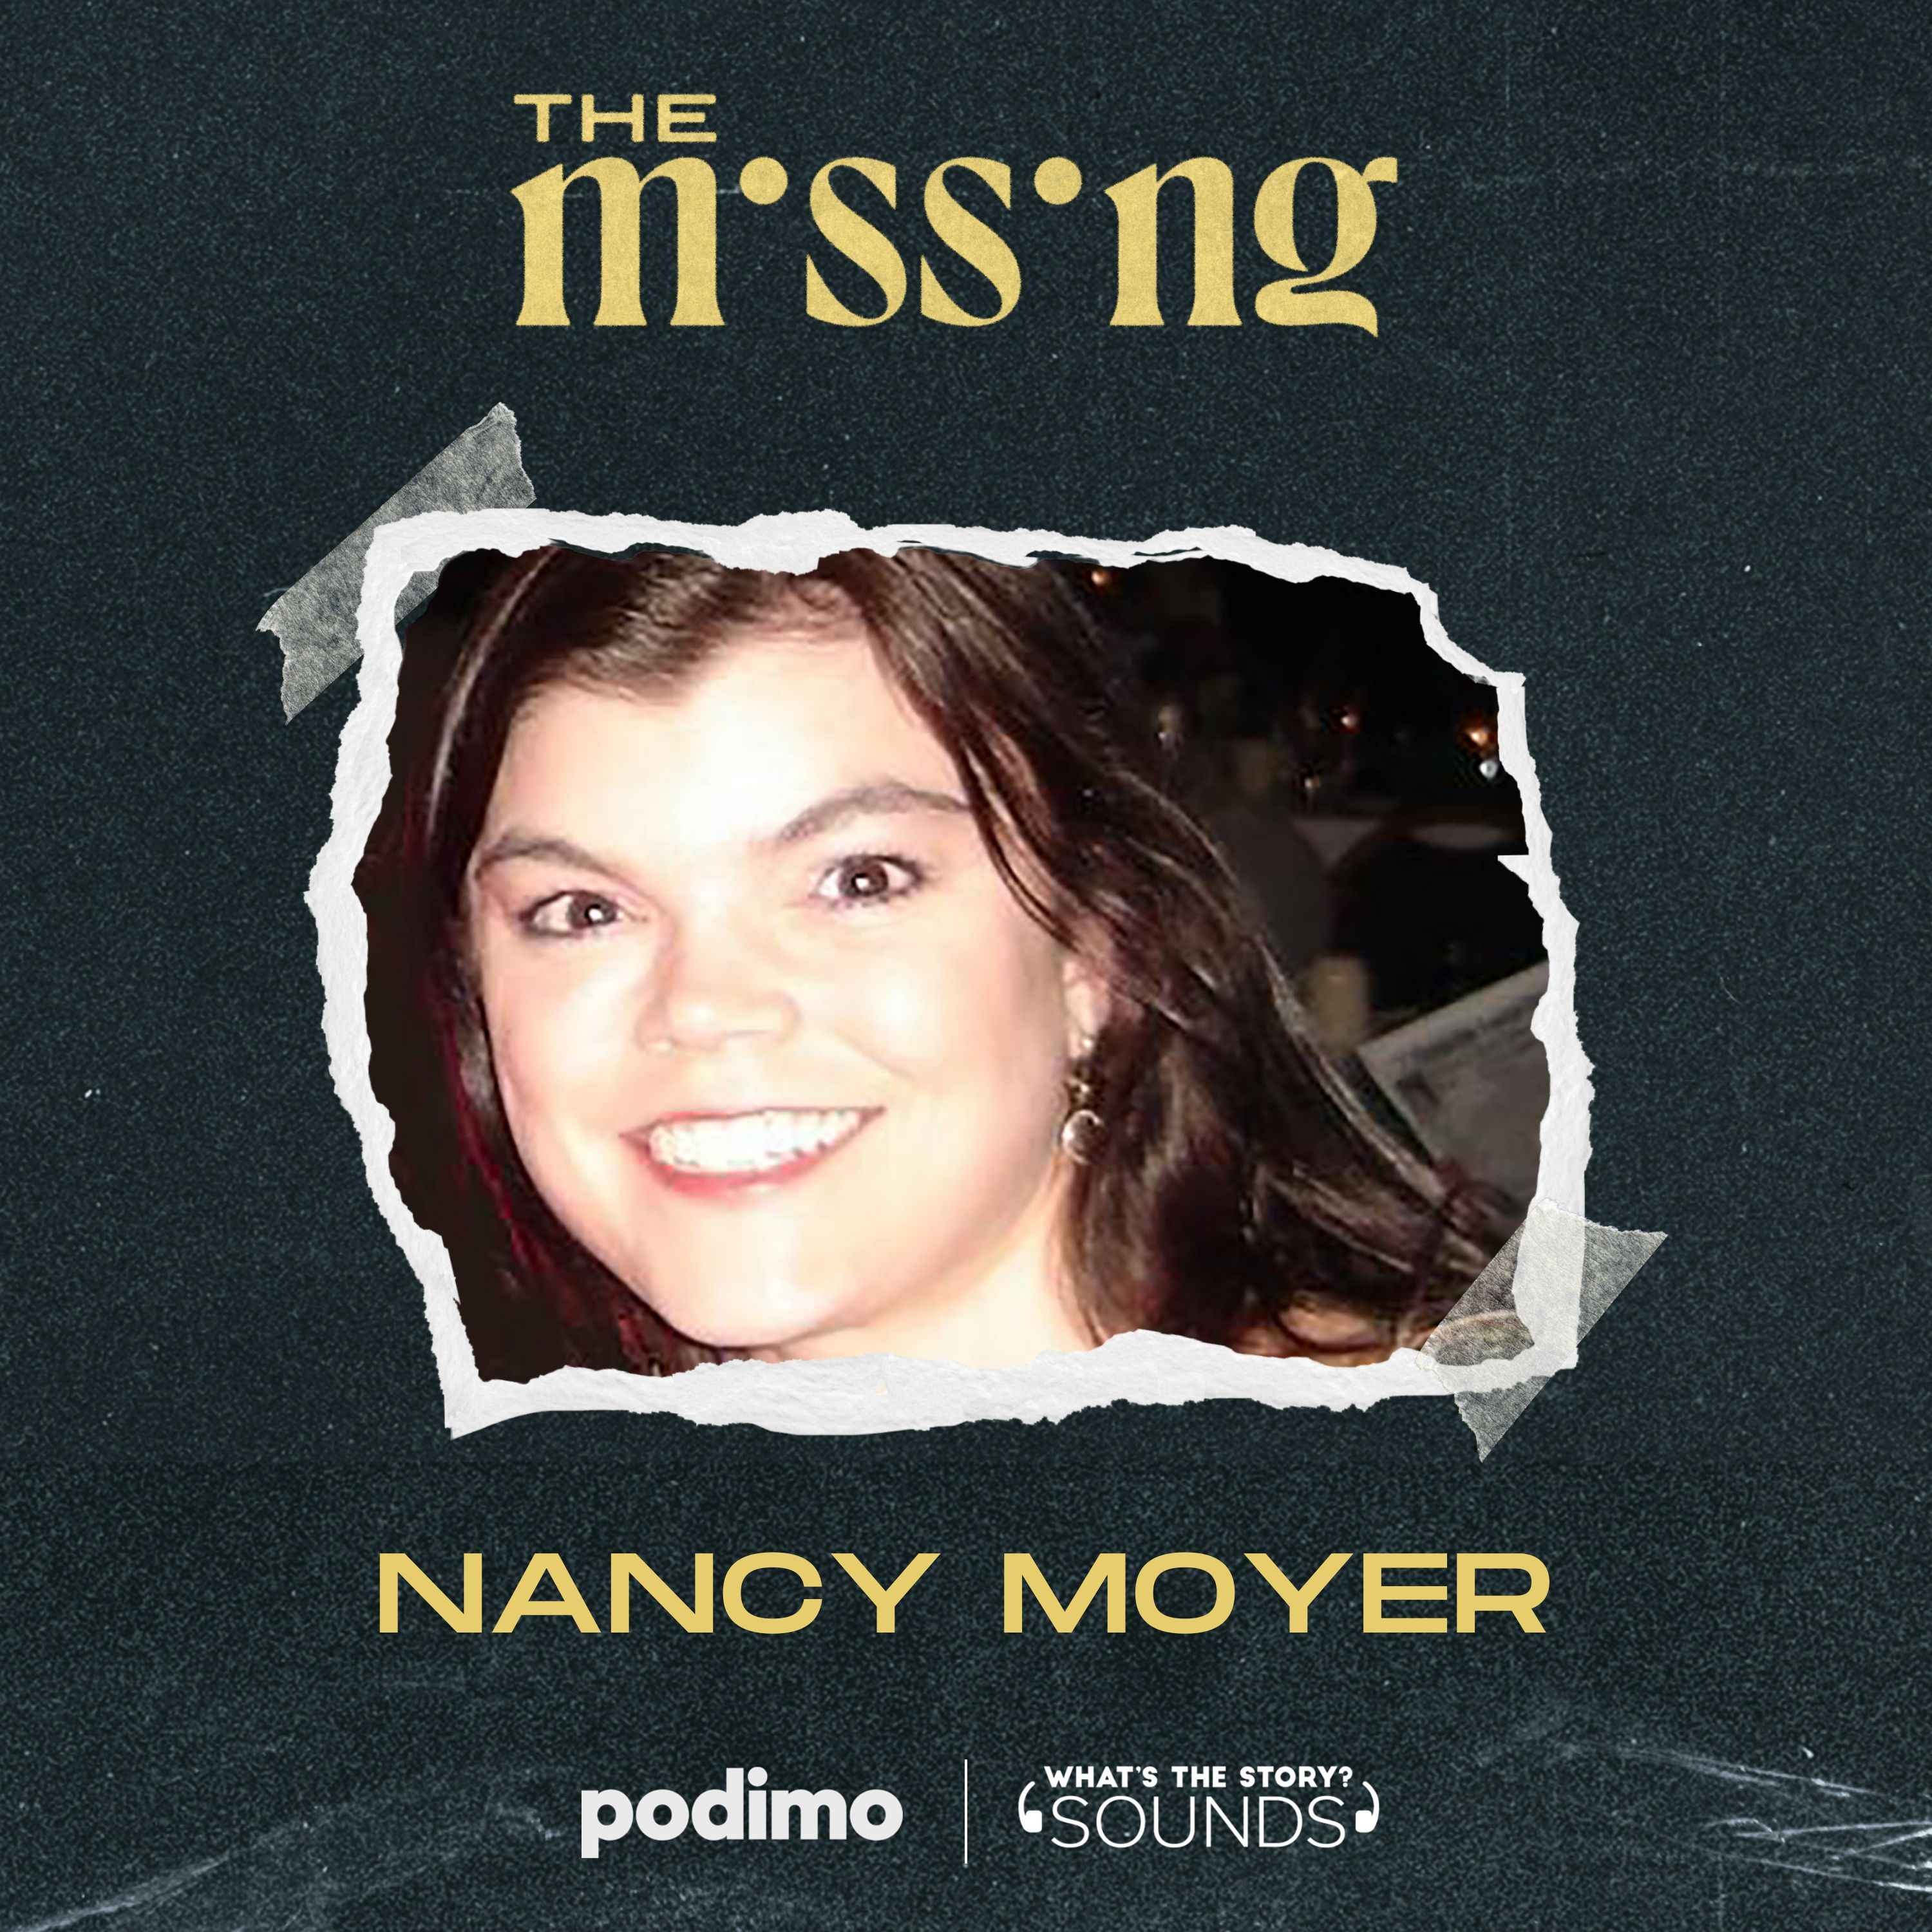 Nancy Moyer